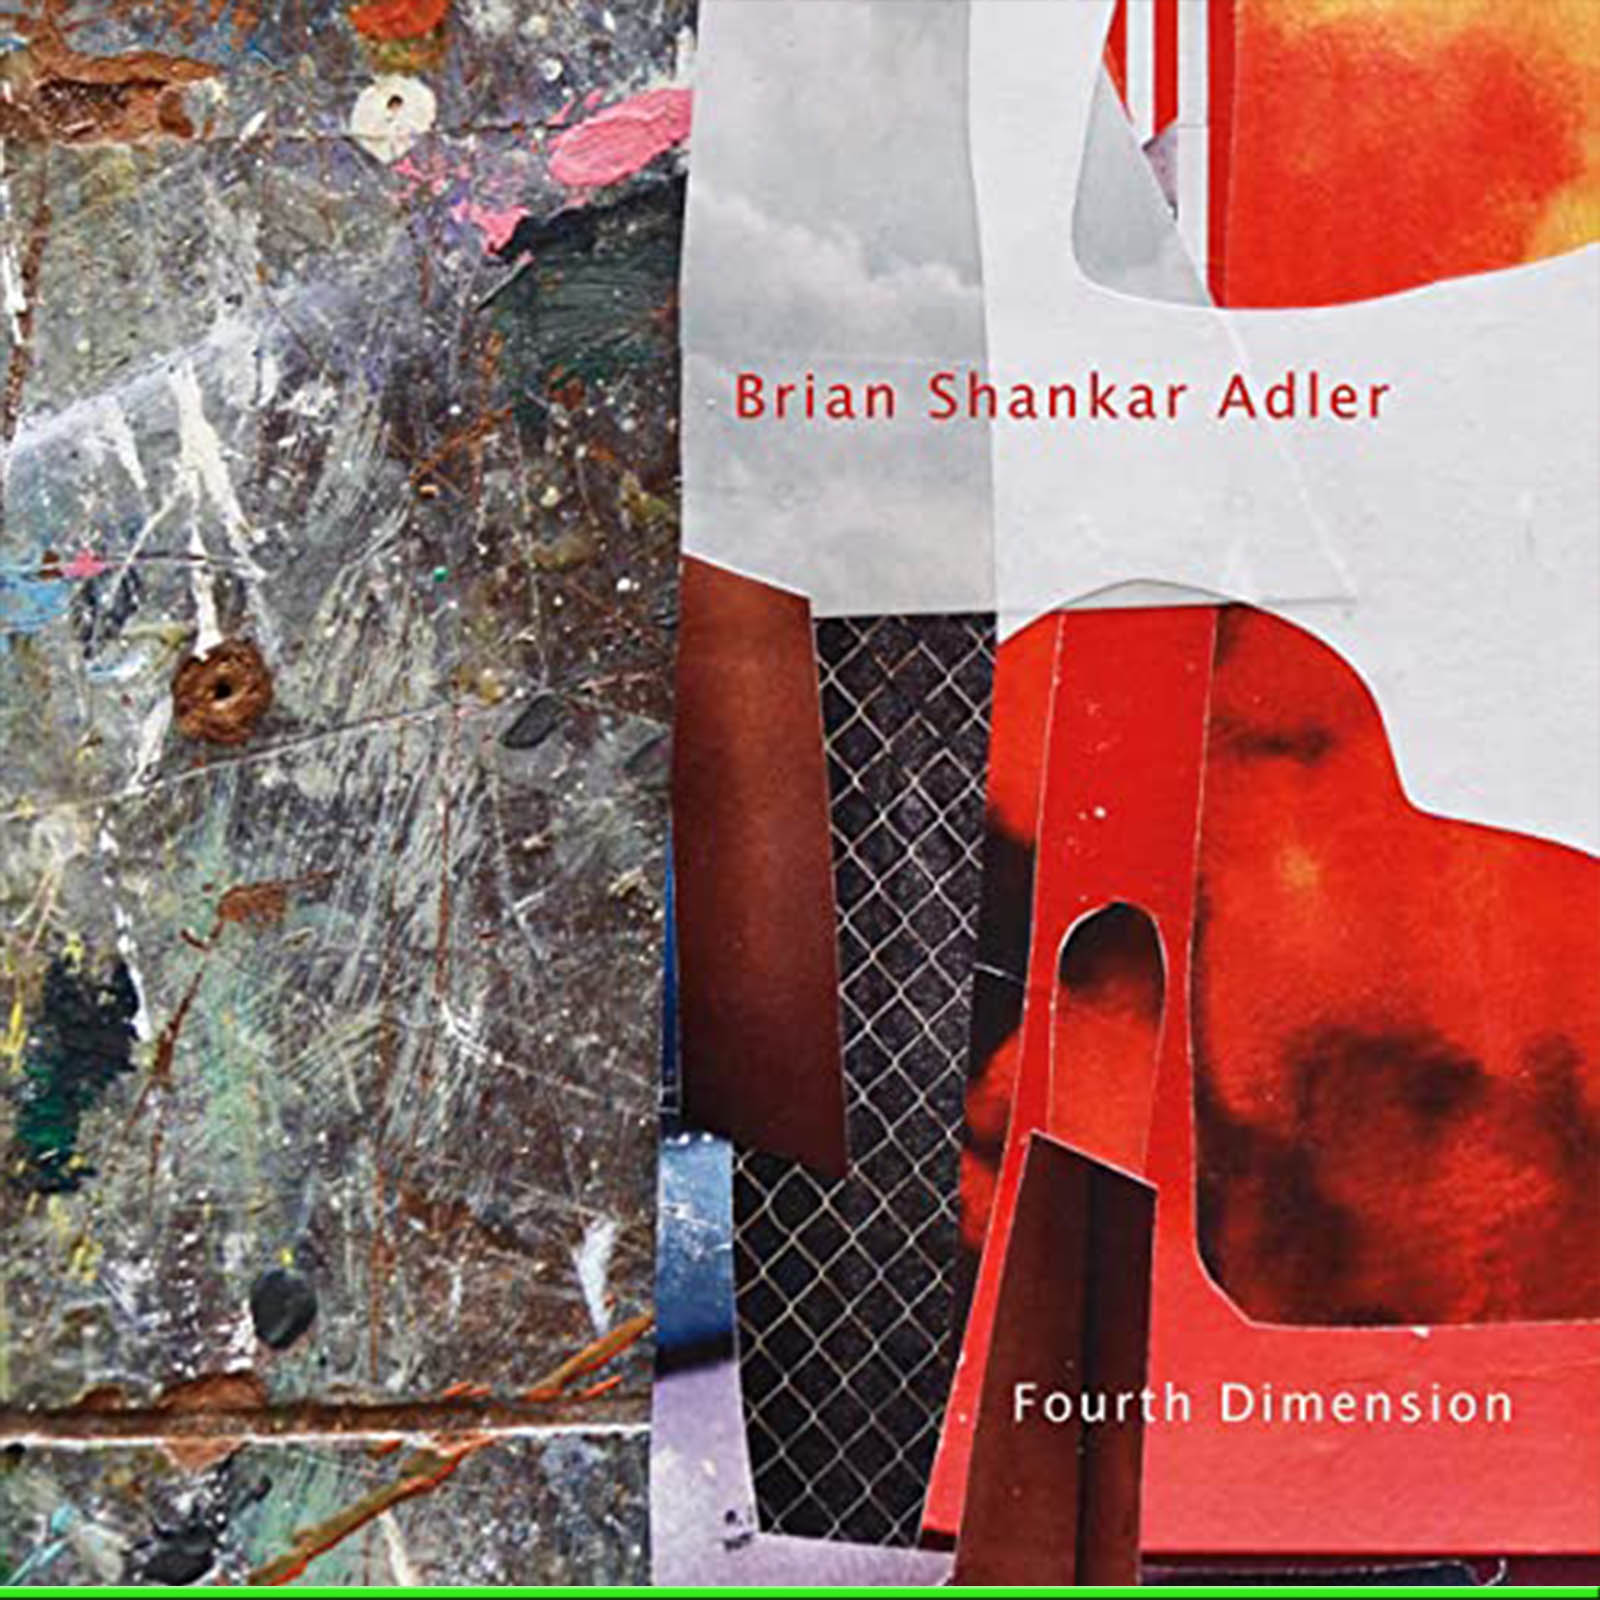 Brian-Shankar-Adler-modern-jazz-today-